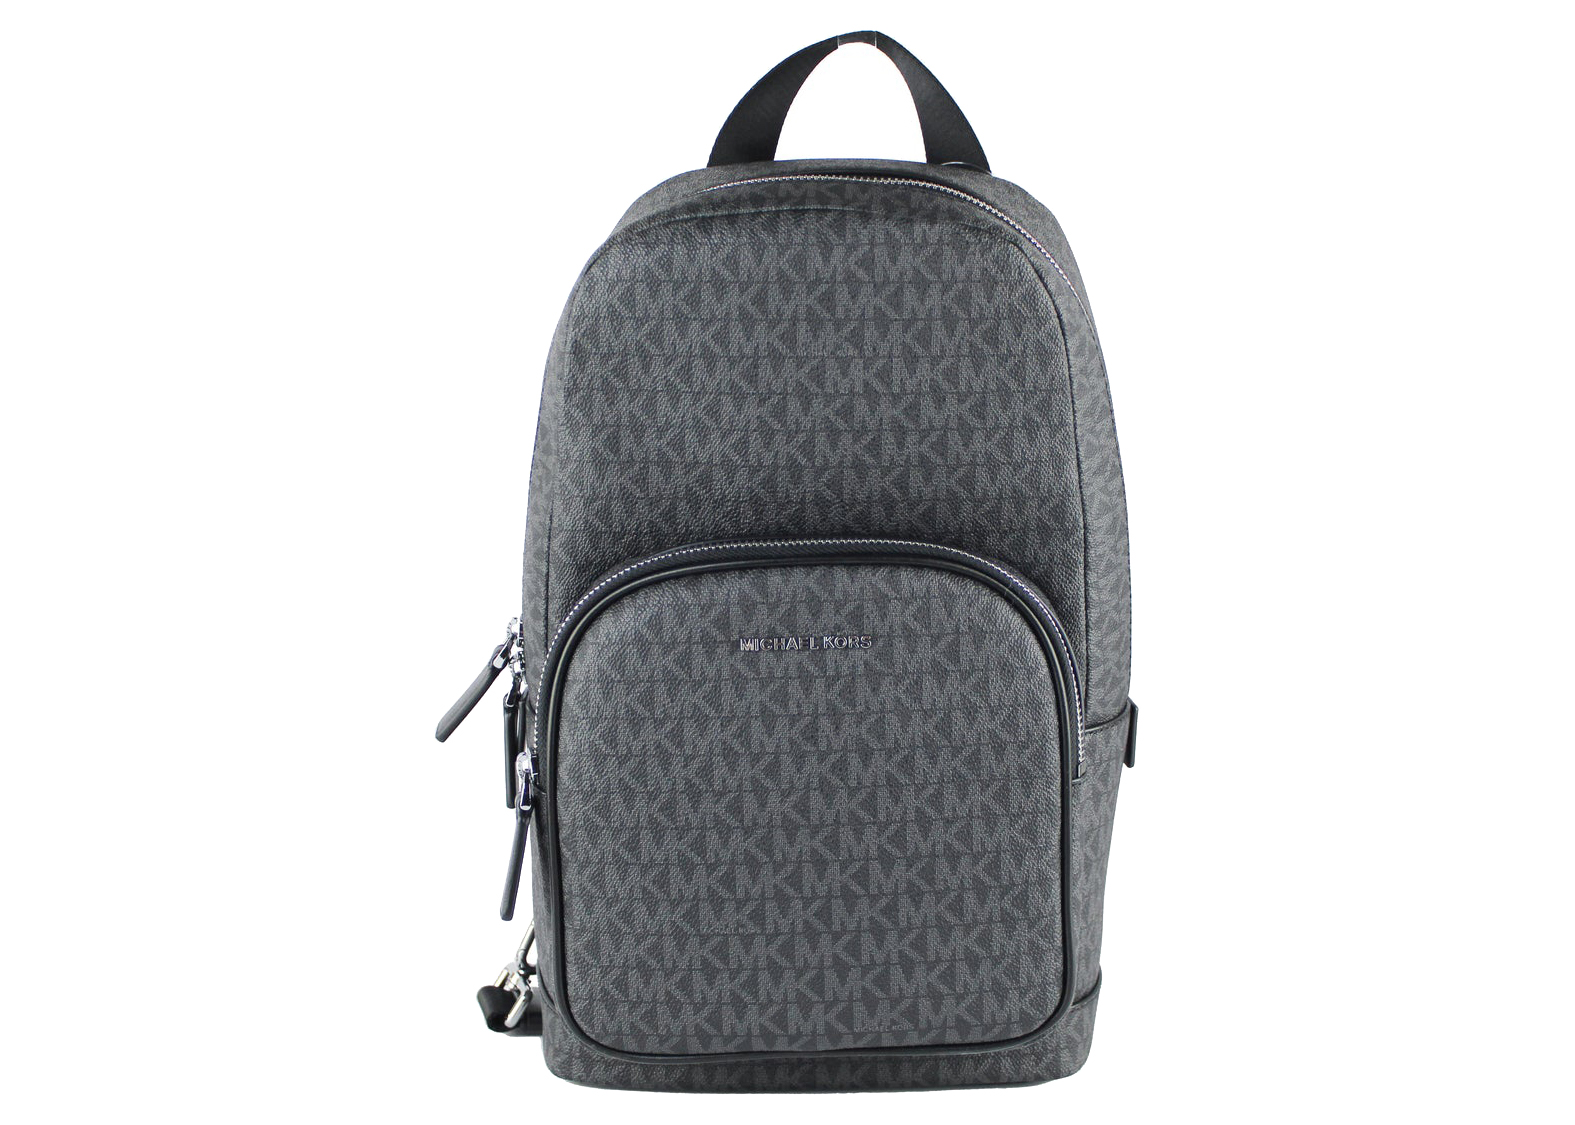 MICHAEL KORS Jaycee Medium Pebbled Leather Backpack